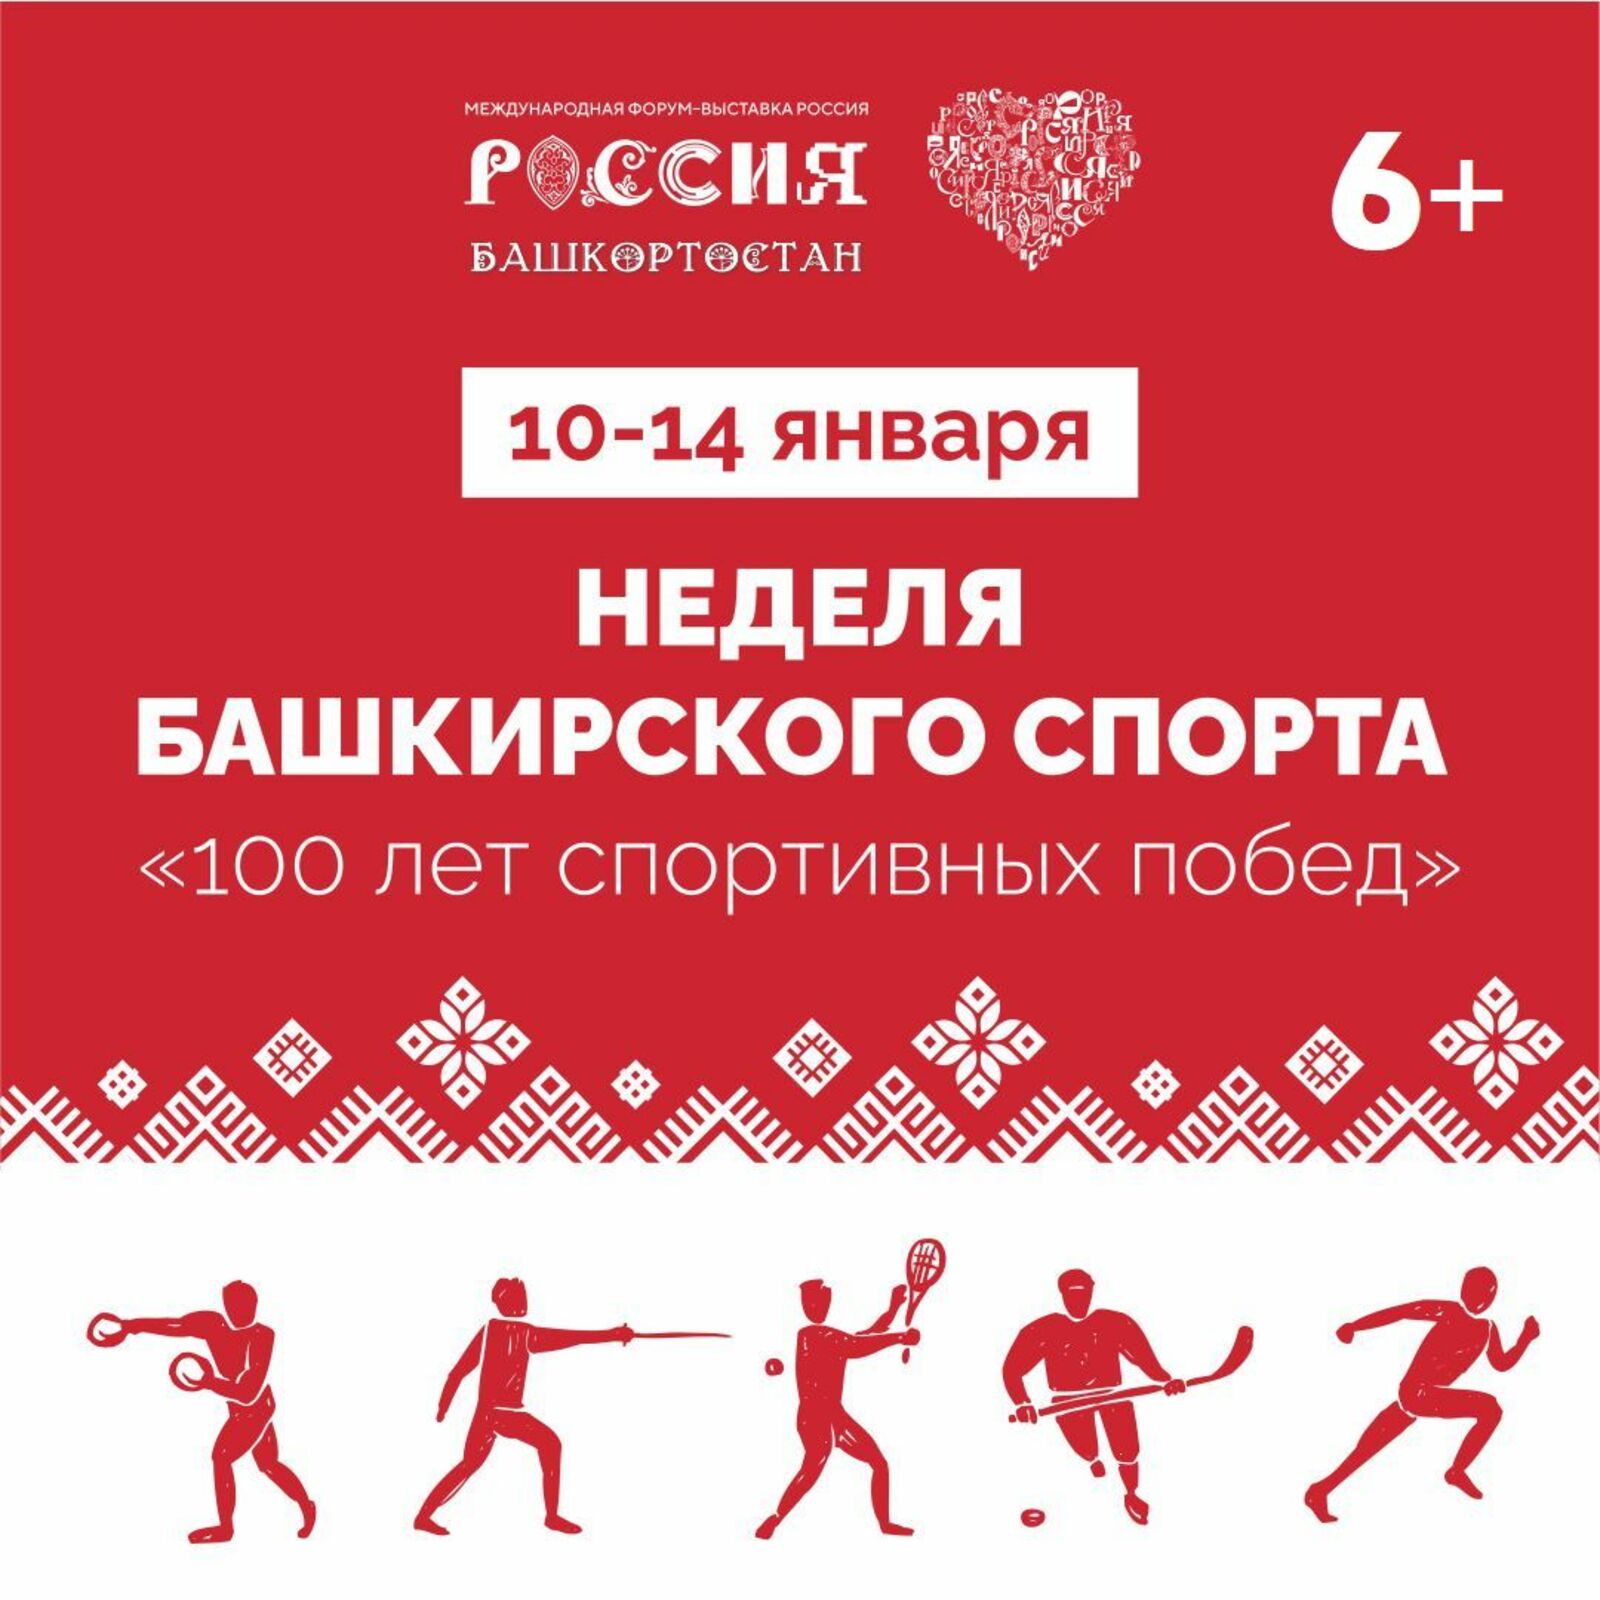 Неделя башкирского спорта "100 лет спортивных побед"